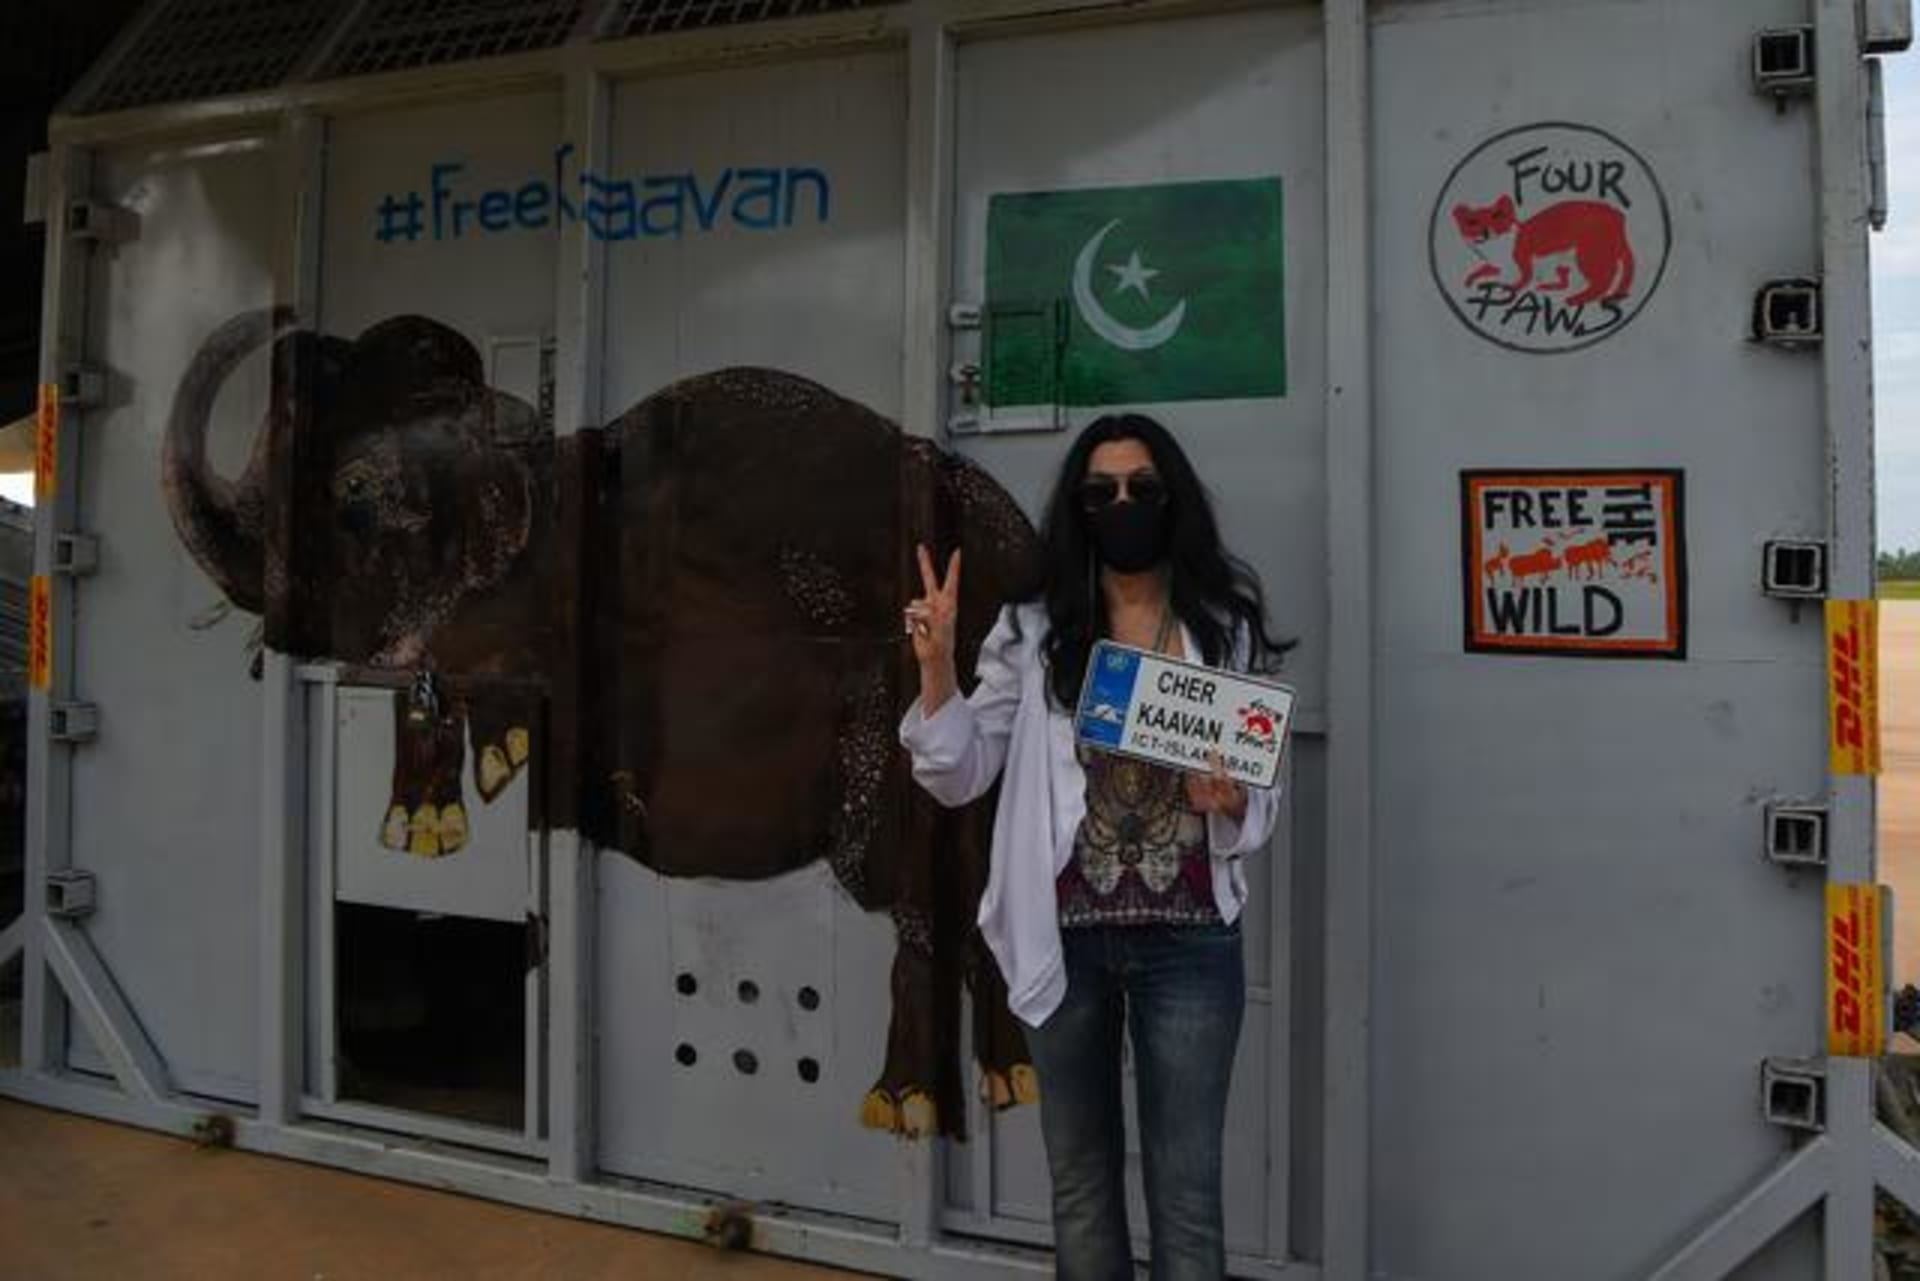 Do kampaně za propuštění Kaavana do azylu se zapojila i zpěvačka Cher.